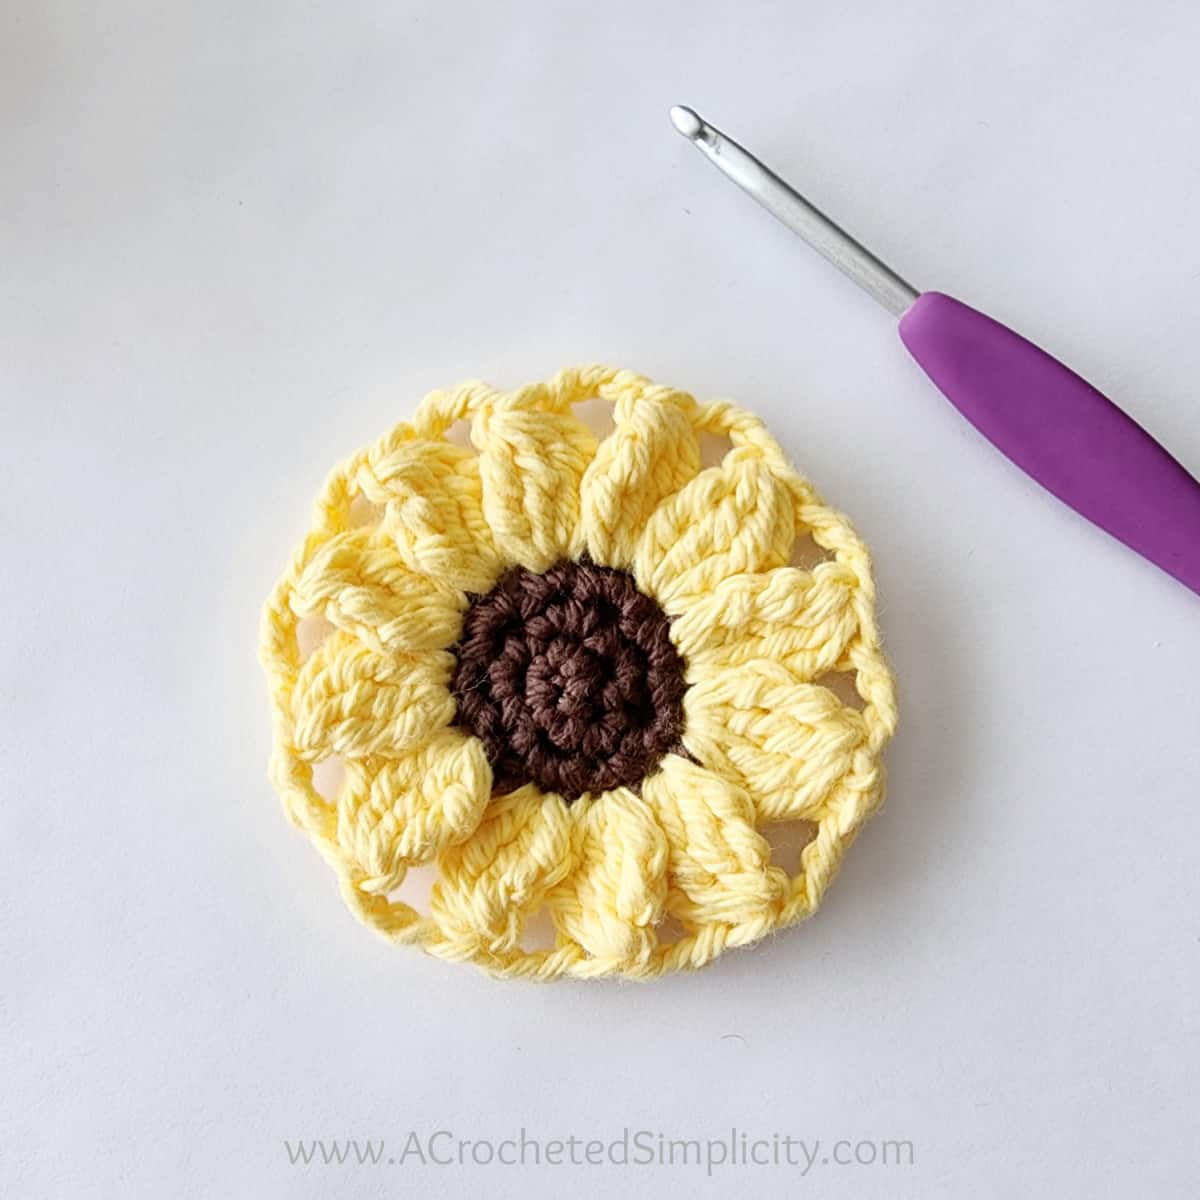 Sunflower crochet motif completed.